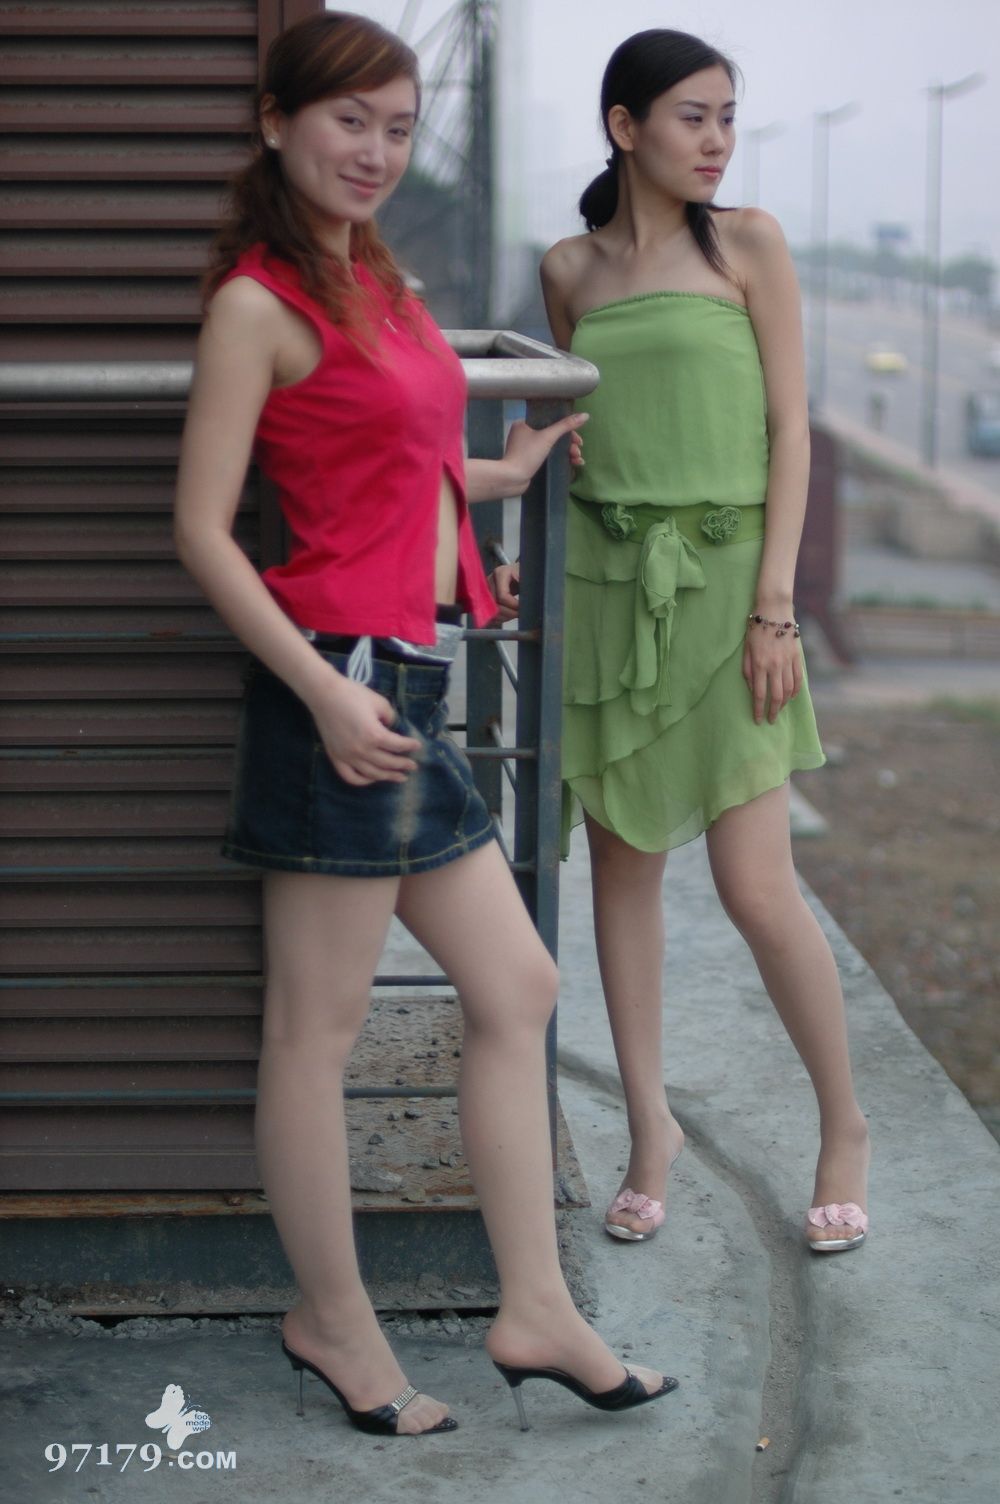 Weiwei of zhonggaoyi and Michelle 2 sexy models of Chinese silk stockings